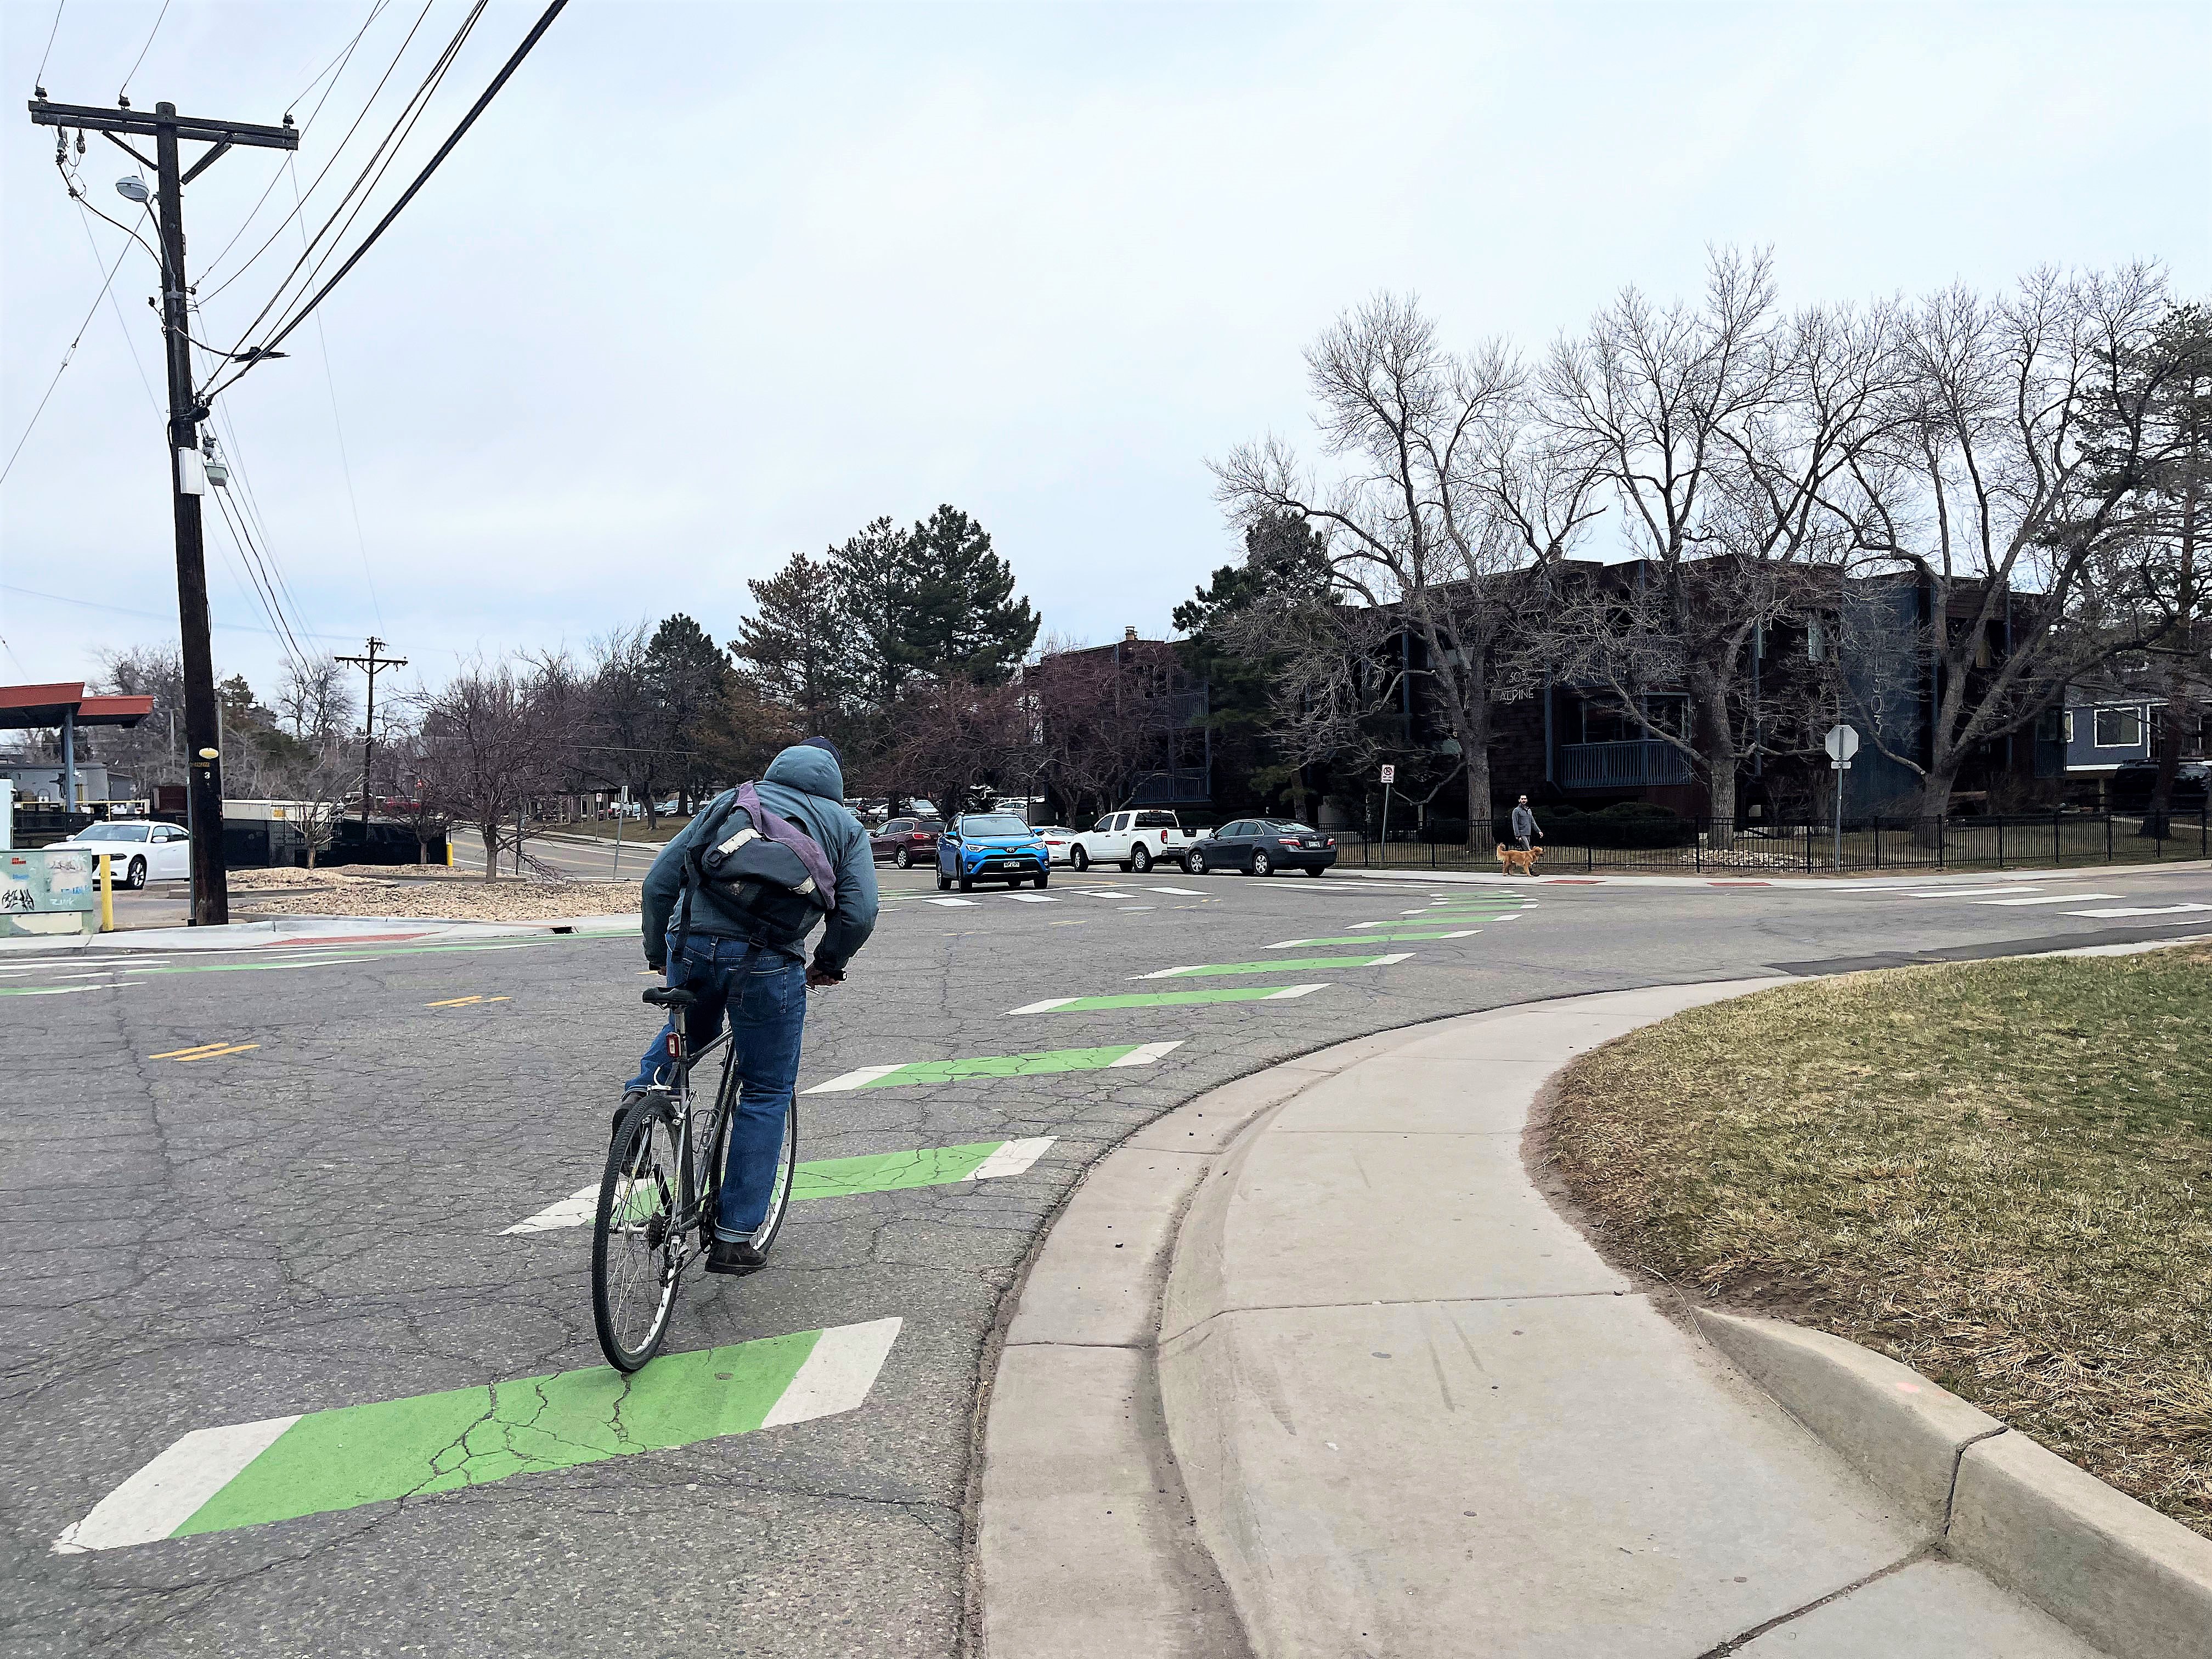 Person biking on striped green bike lane